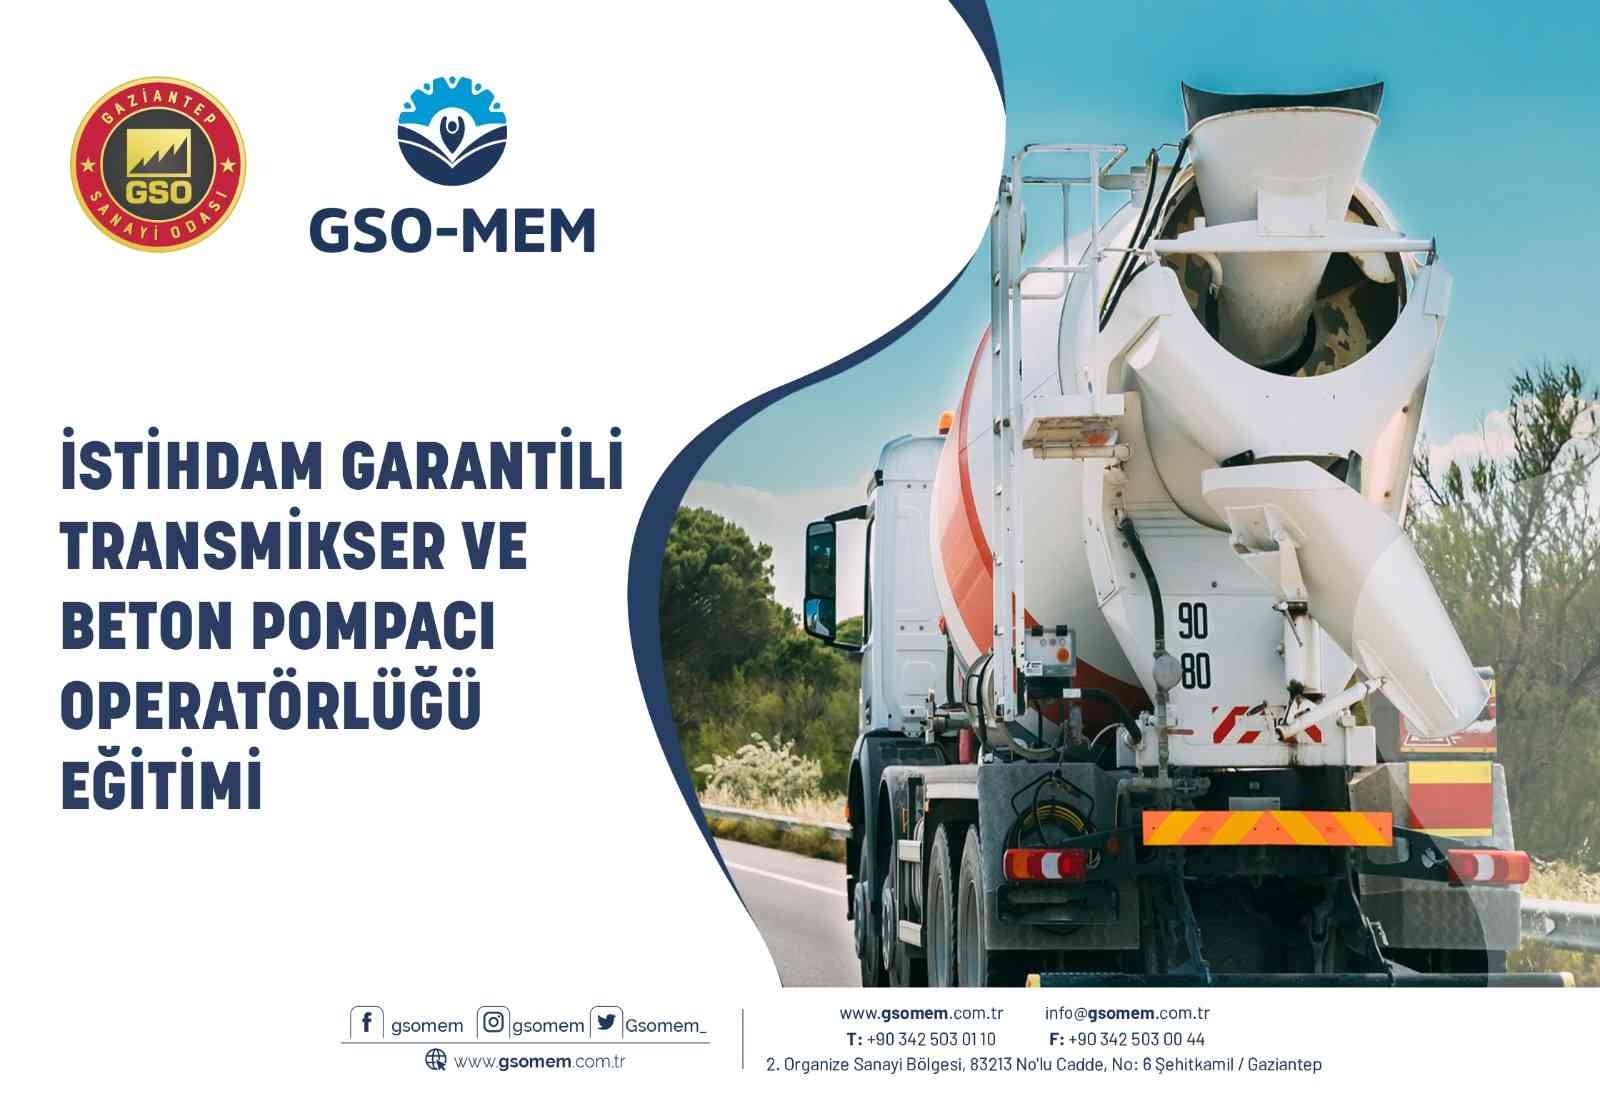 GSO-MEM’de istihdam garantili Transmikser ve beton pompacı operatörlüğü eğitimi verilecek #gaziantep